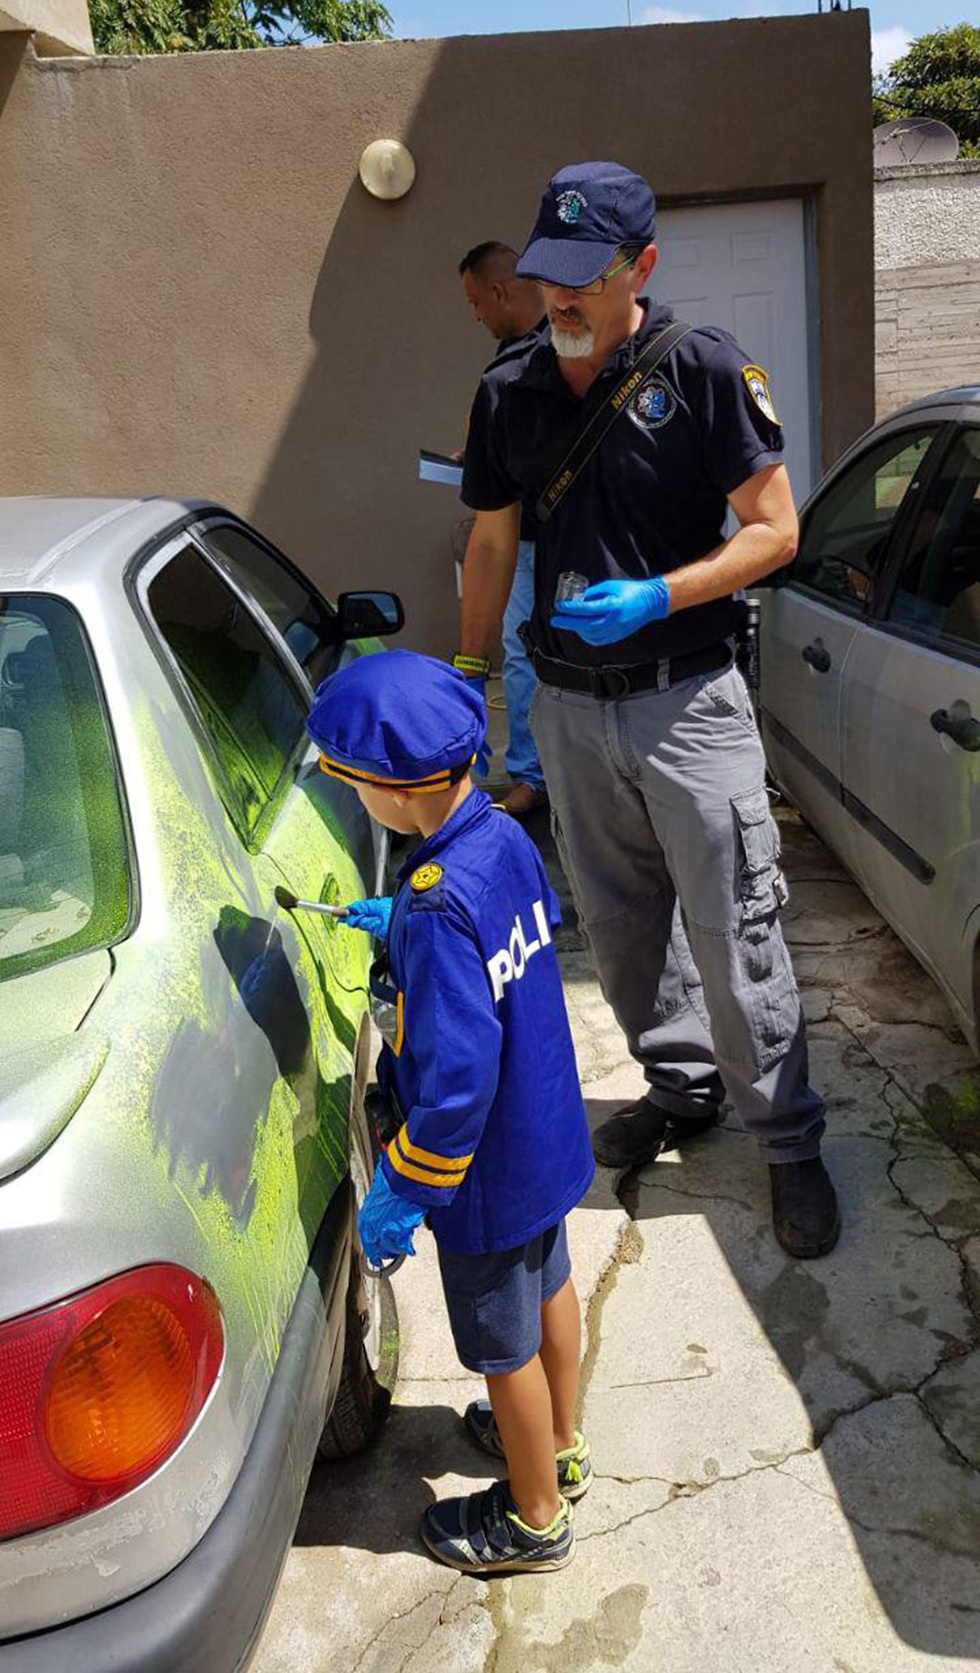 ילד בן 6 לבוש תחפושת שוטר  (צילום: דוברות משטרת מחוז חוף)